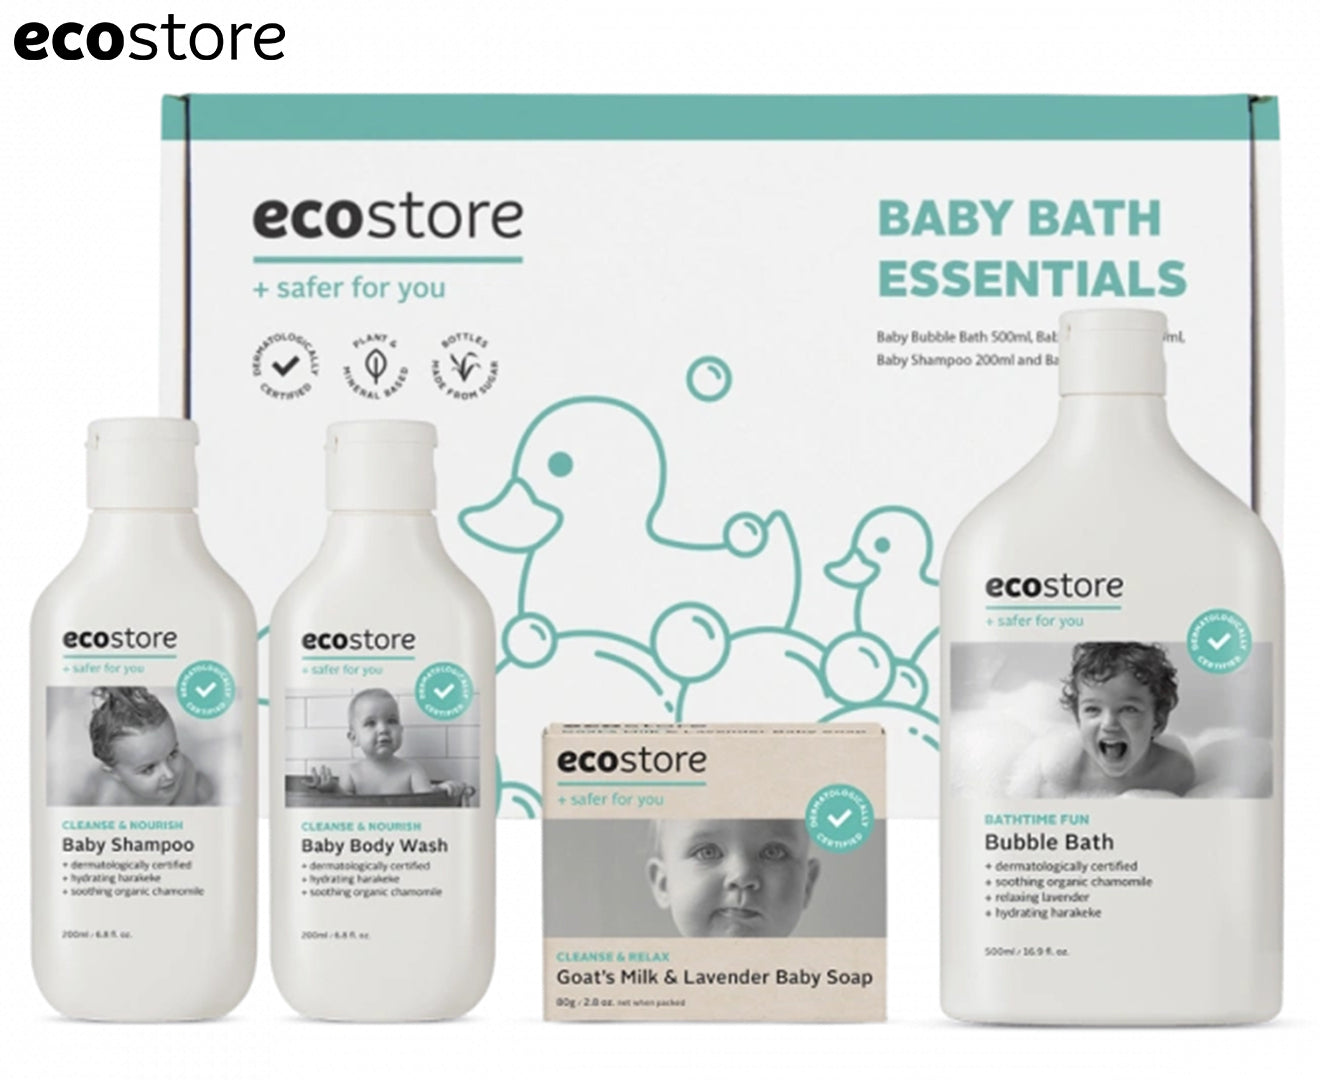 Ecostore Baby Bath Essentials Pack